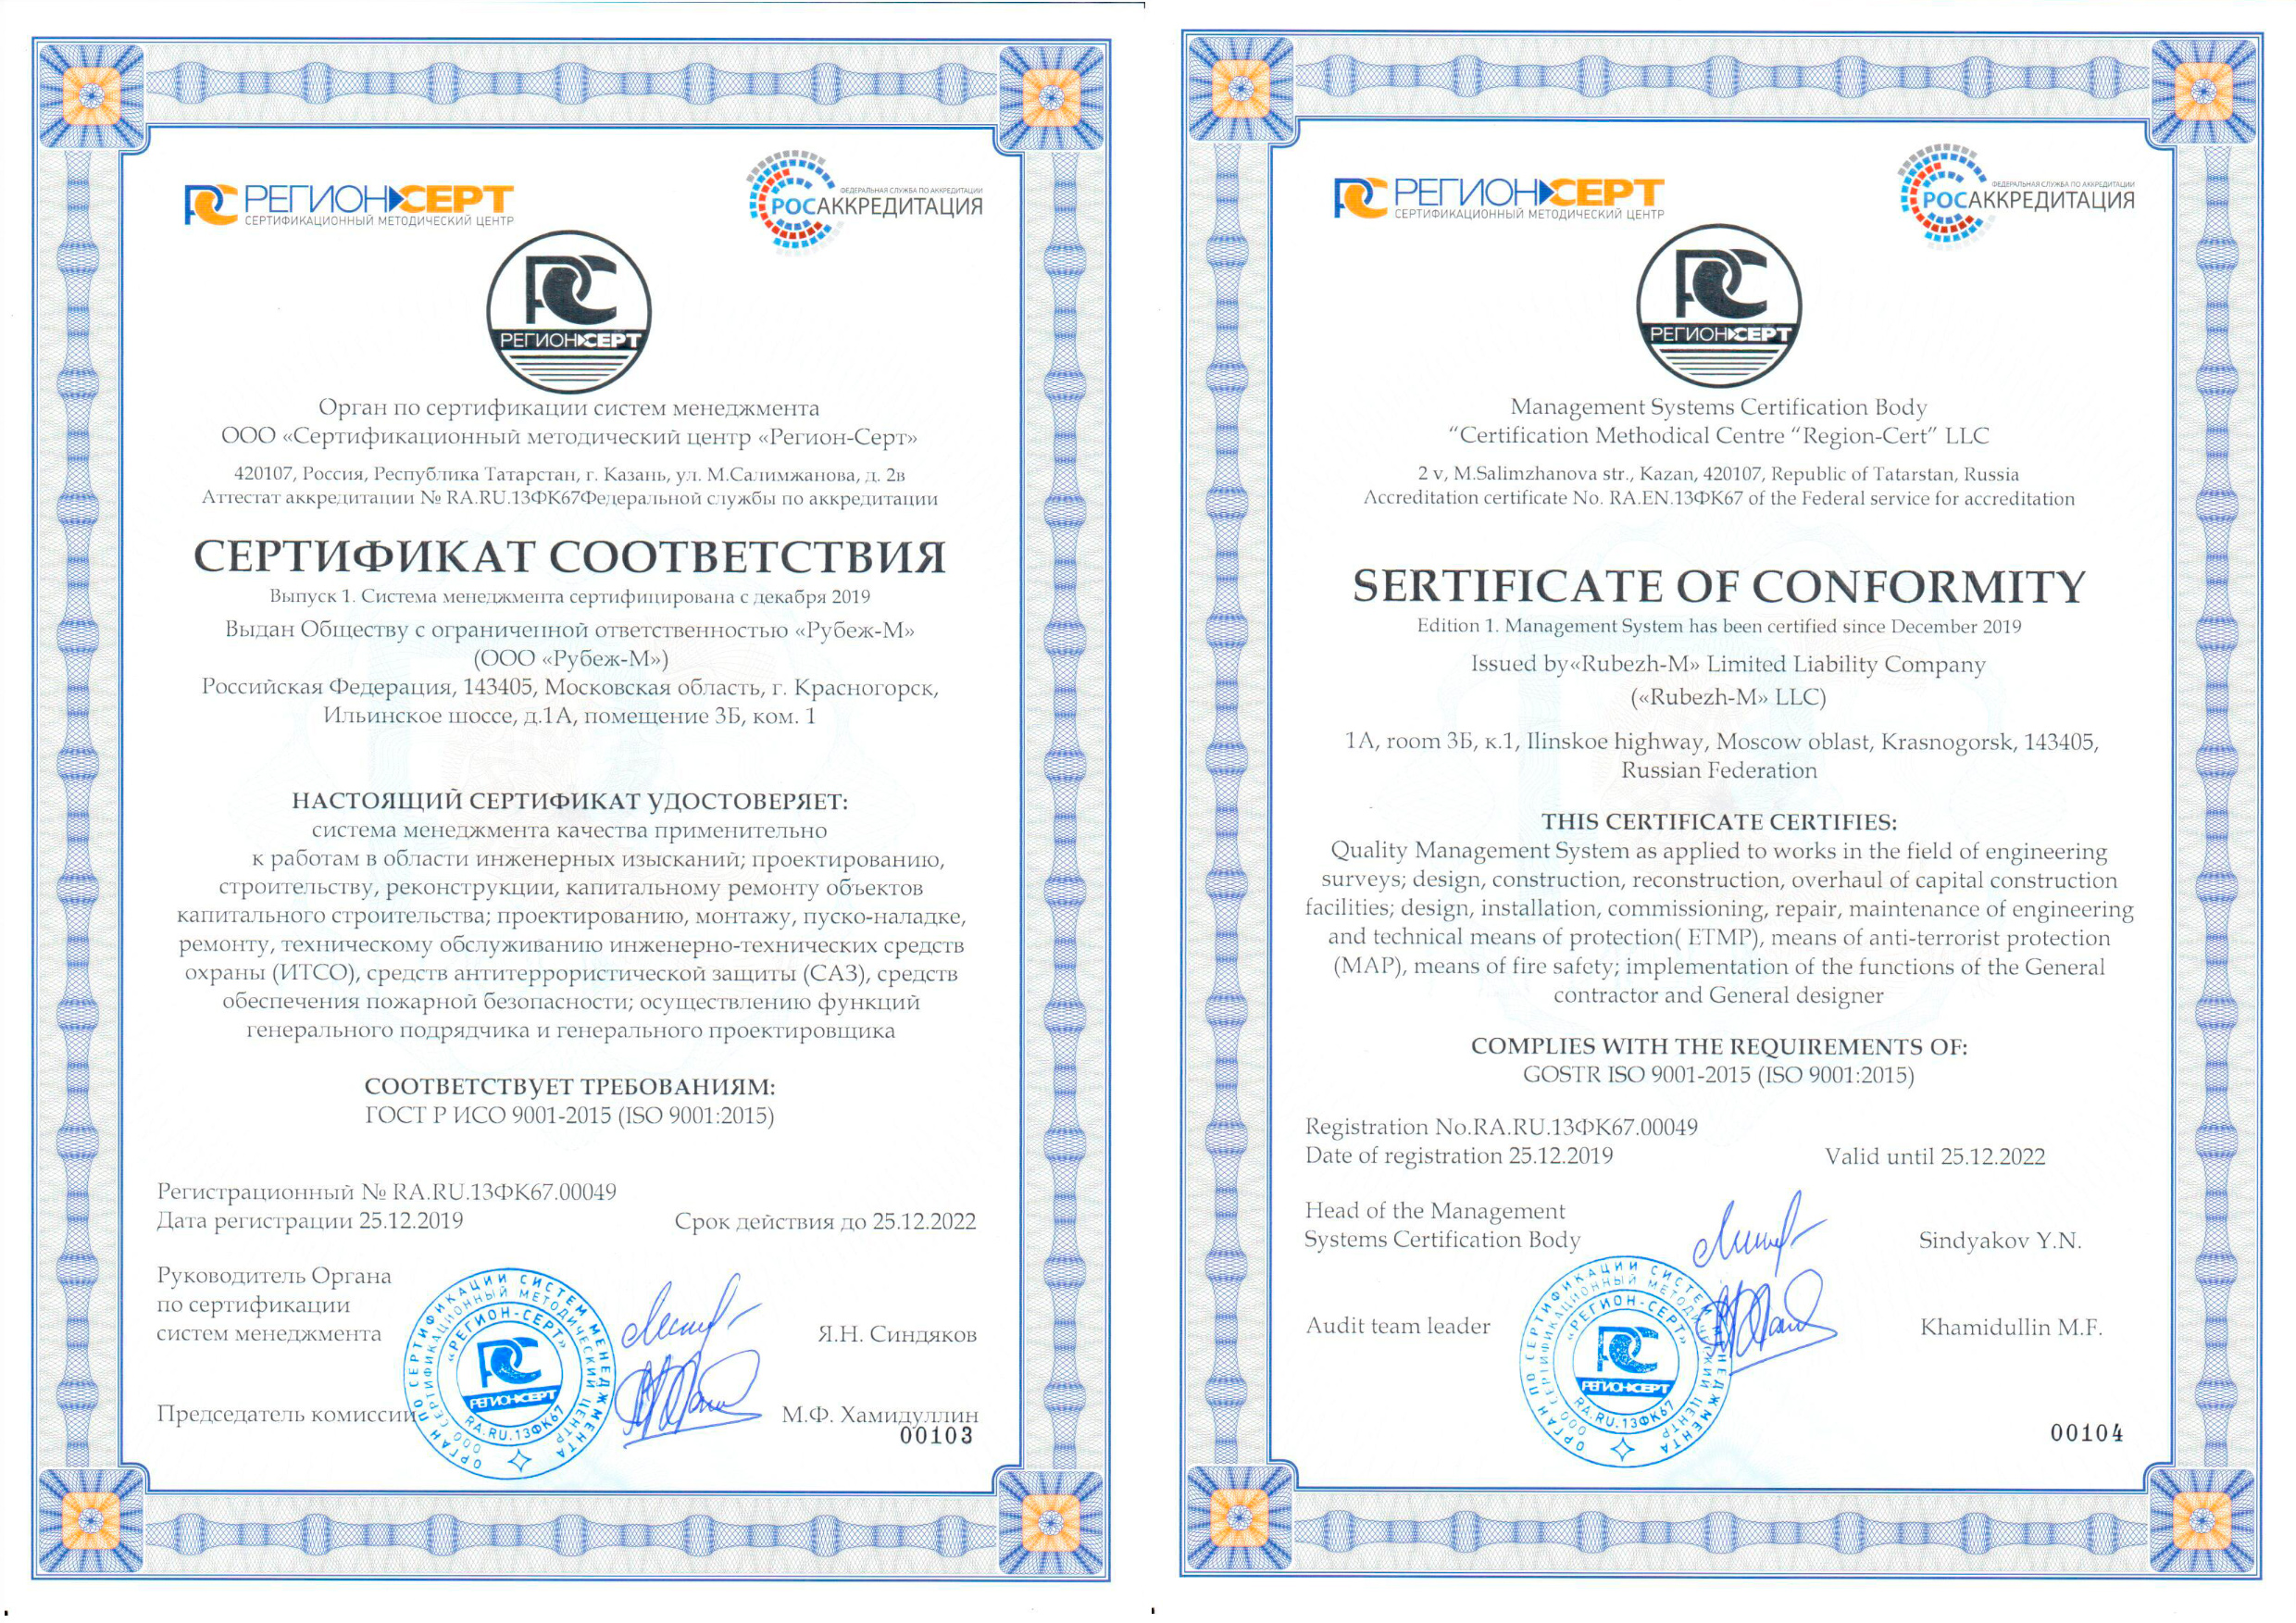 Сертификата соответствия СМК ISO 9001, ИСО 9001. Сертификат смк 9001